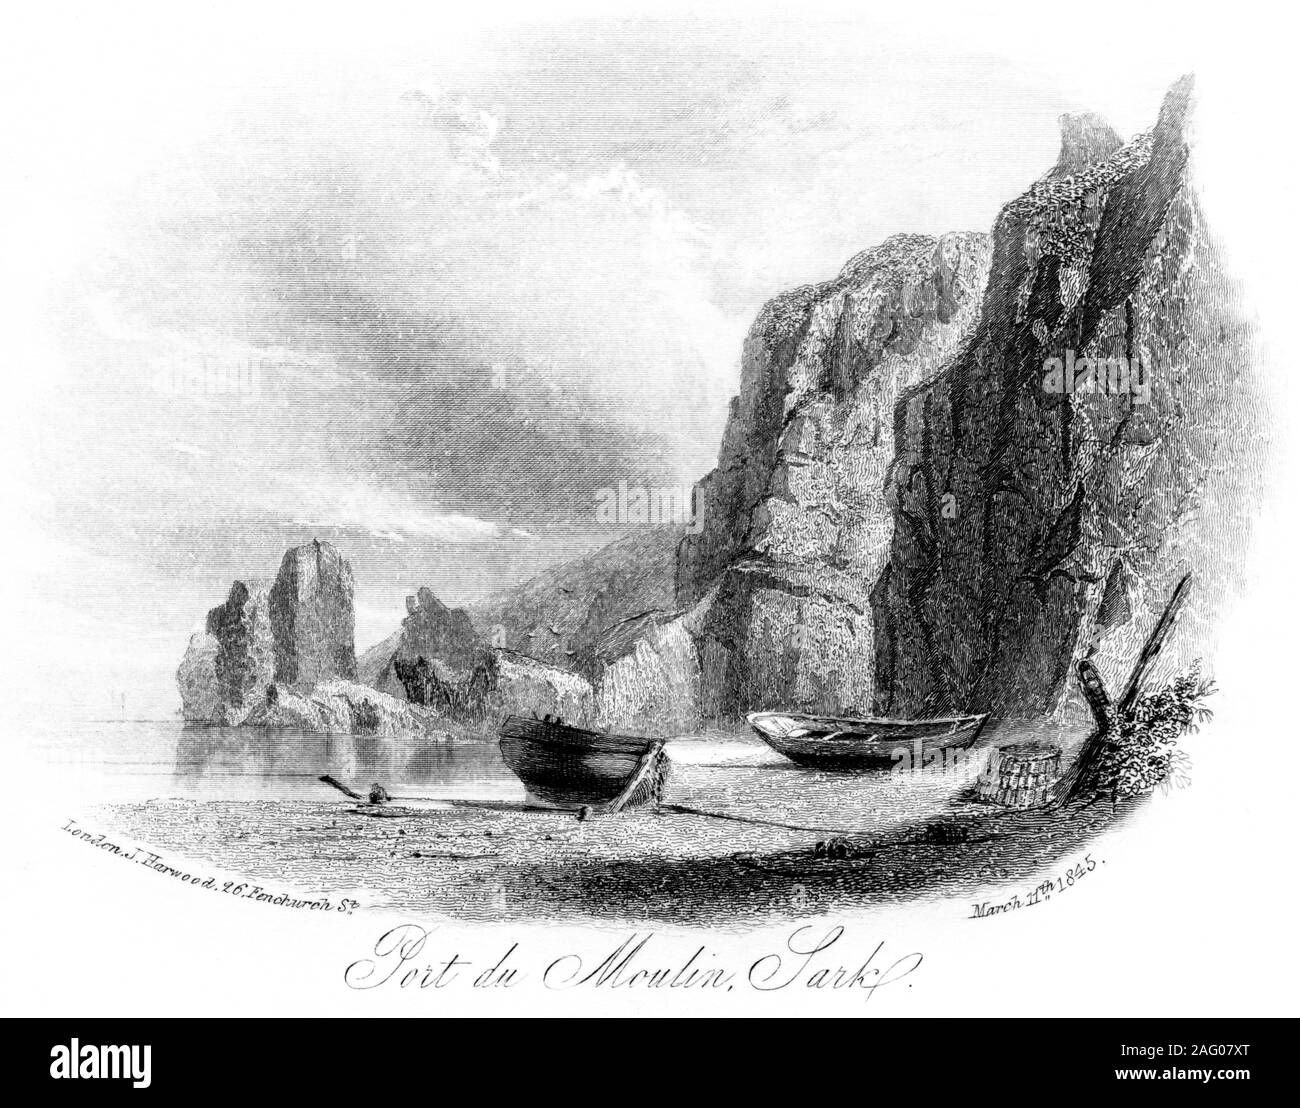 Una incisione di Port du Moulin, Sark datata 11 marzo 1845 scansionati ad alta risoluzione. Ritiene copyright free. Foto Stock